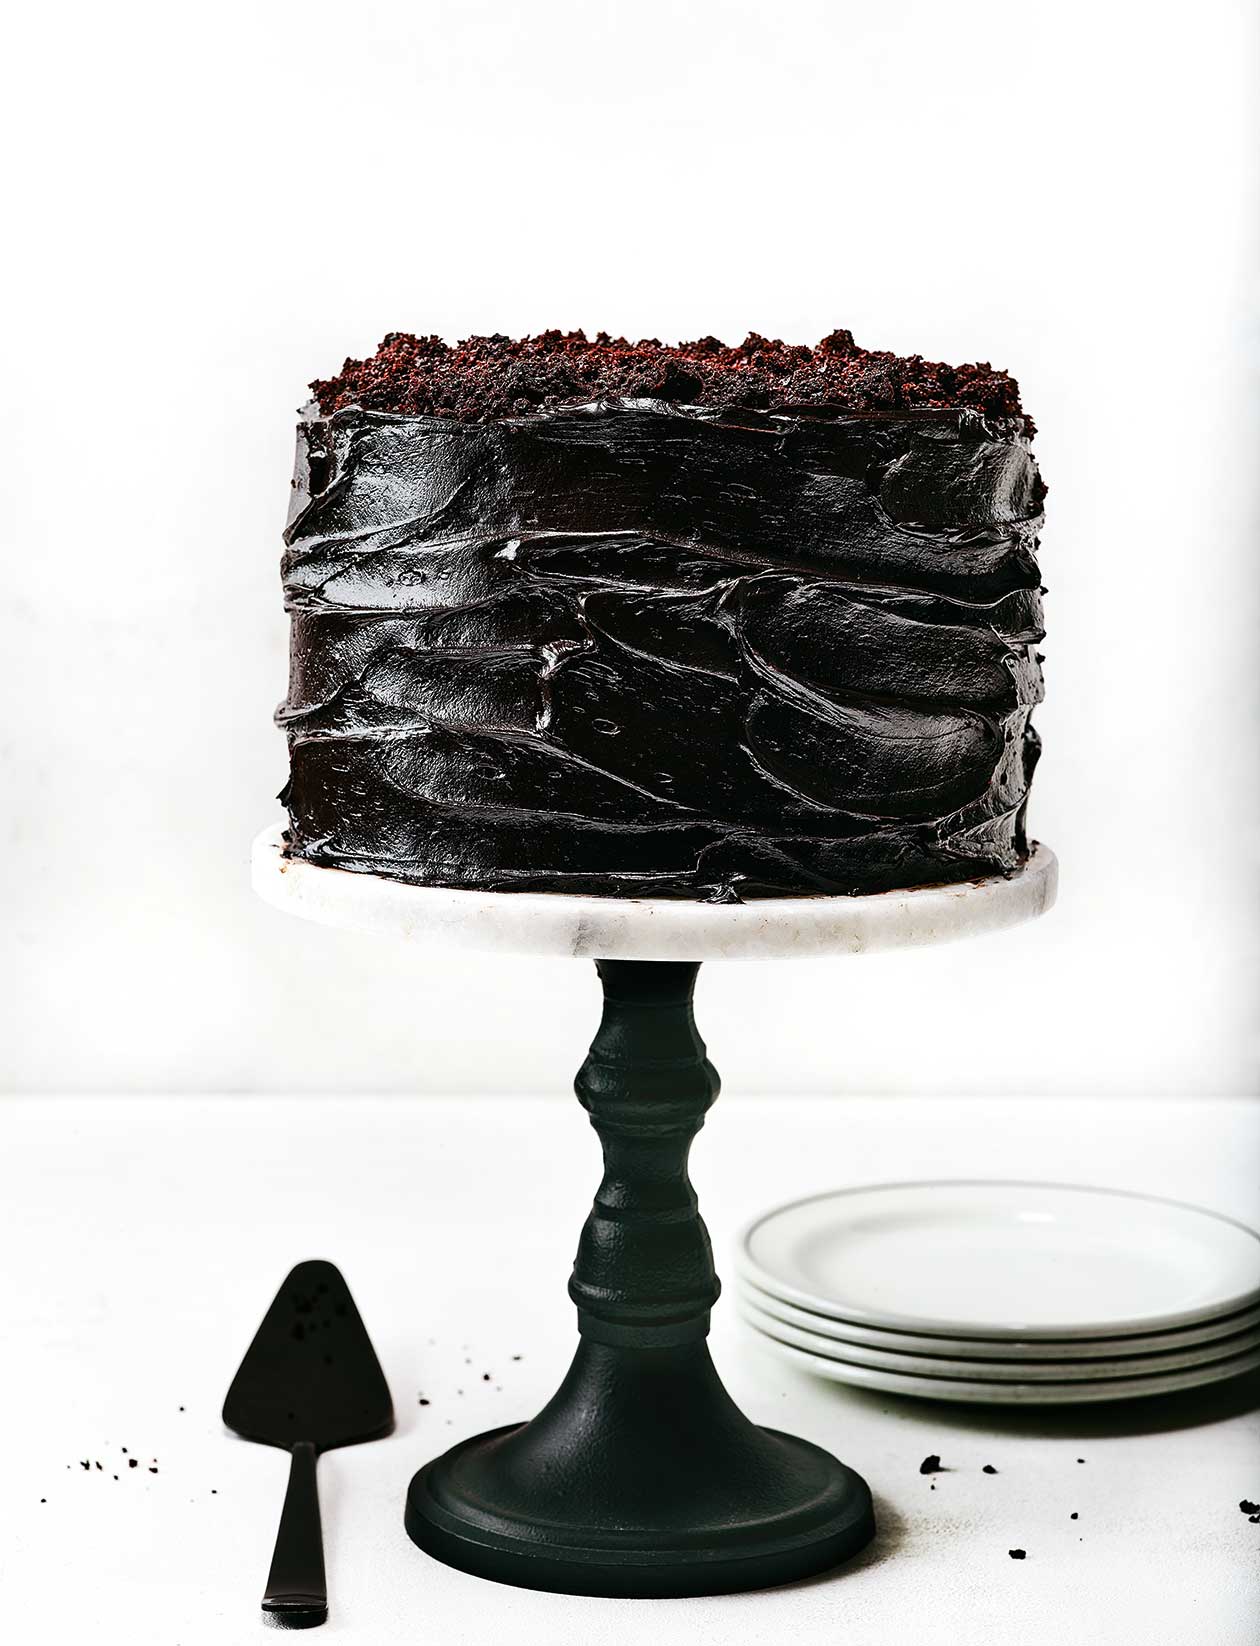 Black Velvet Cake - Ginger Snaps Baking Affairs